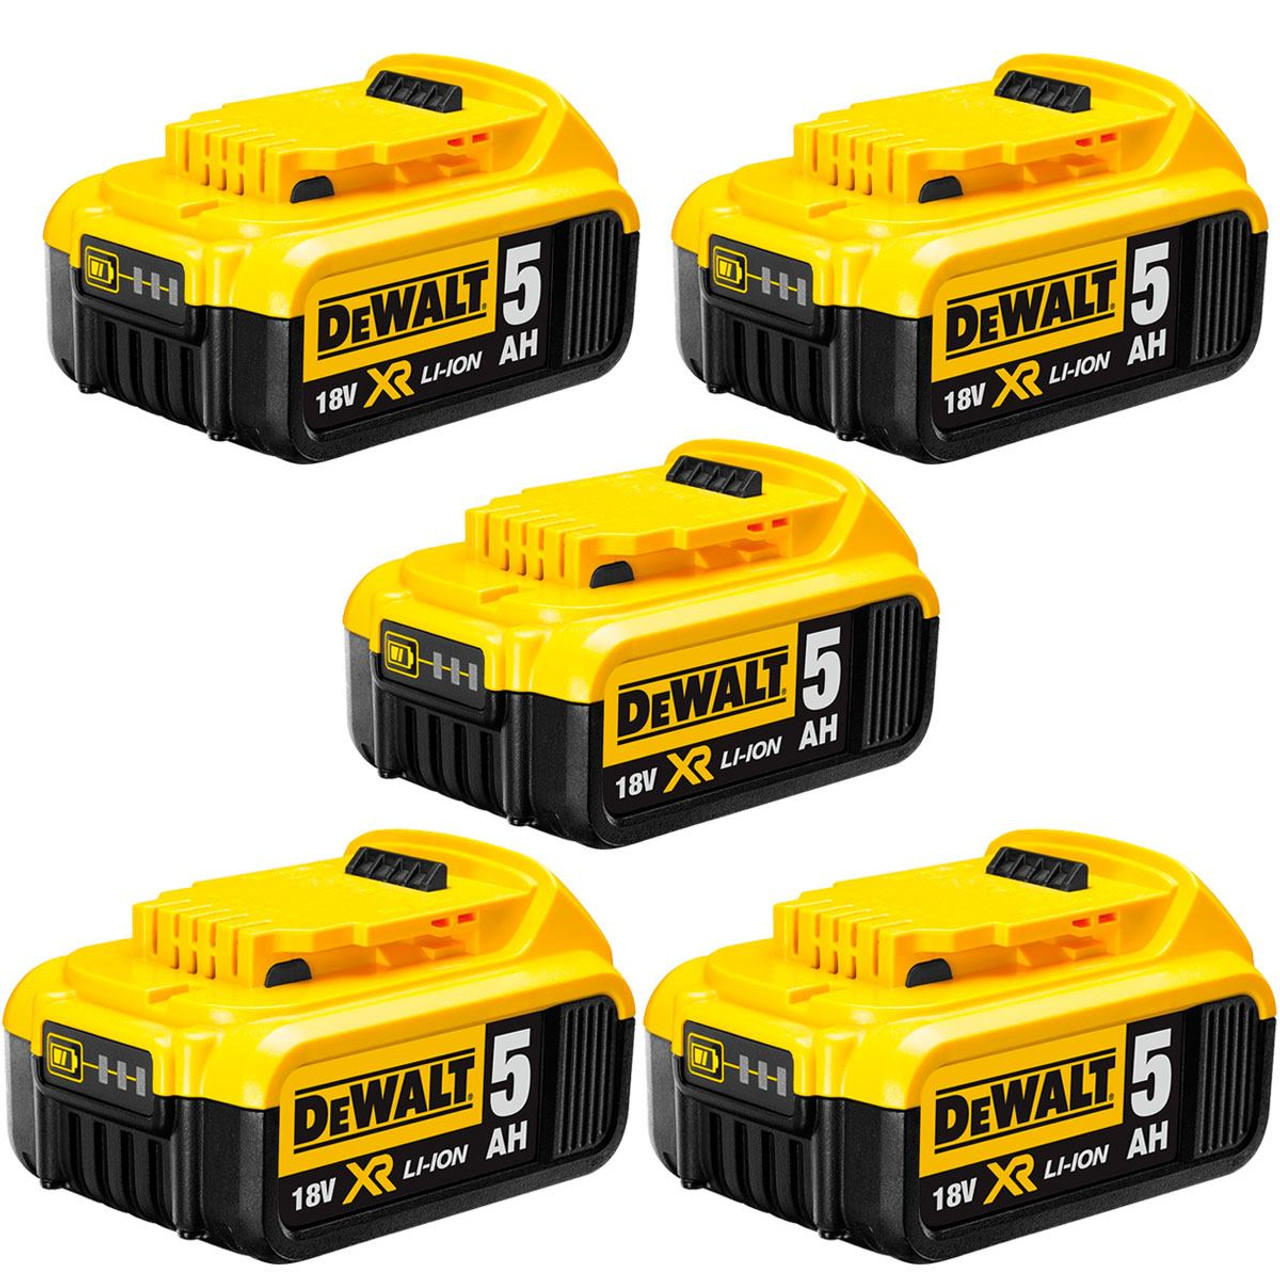 DeWalt DCB184 18v 5ah battery